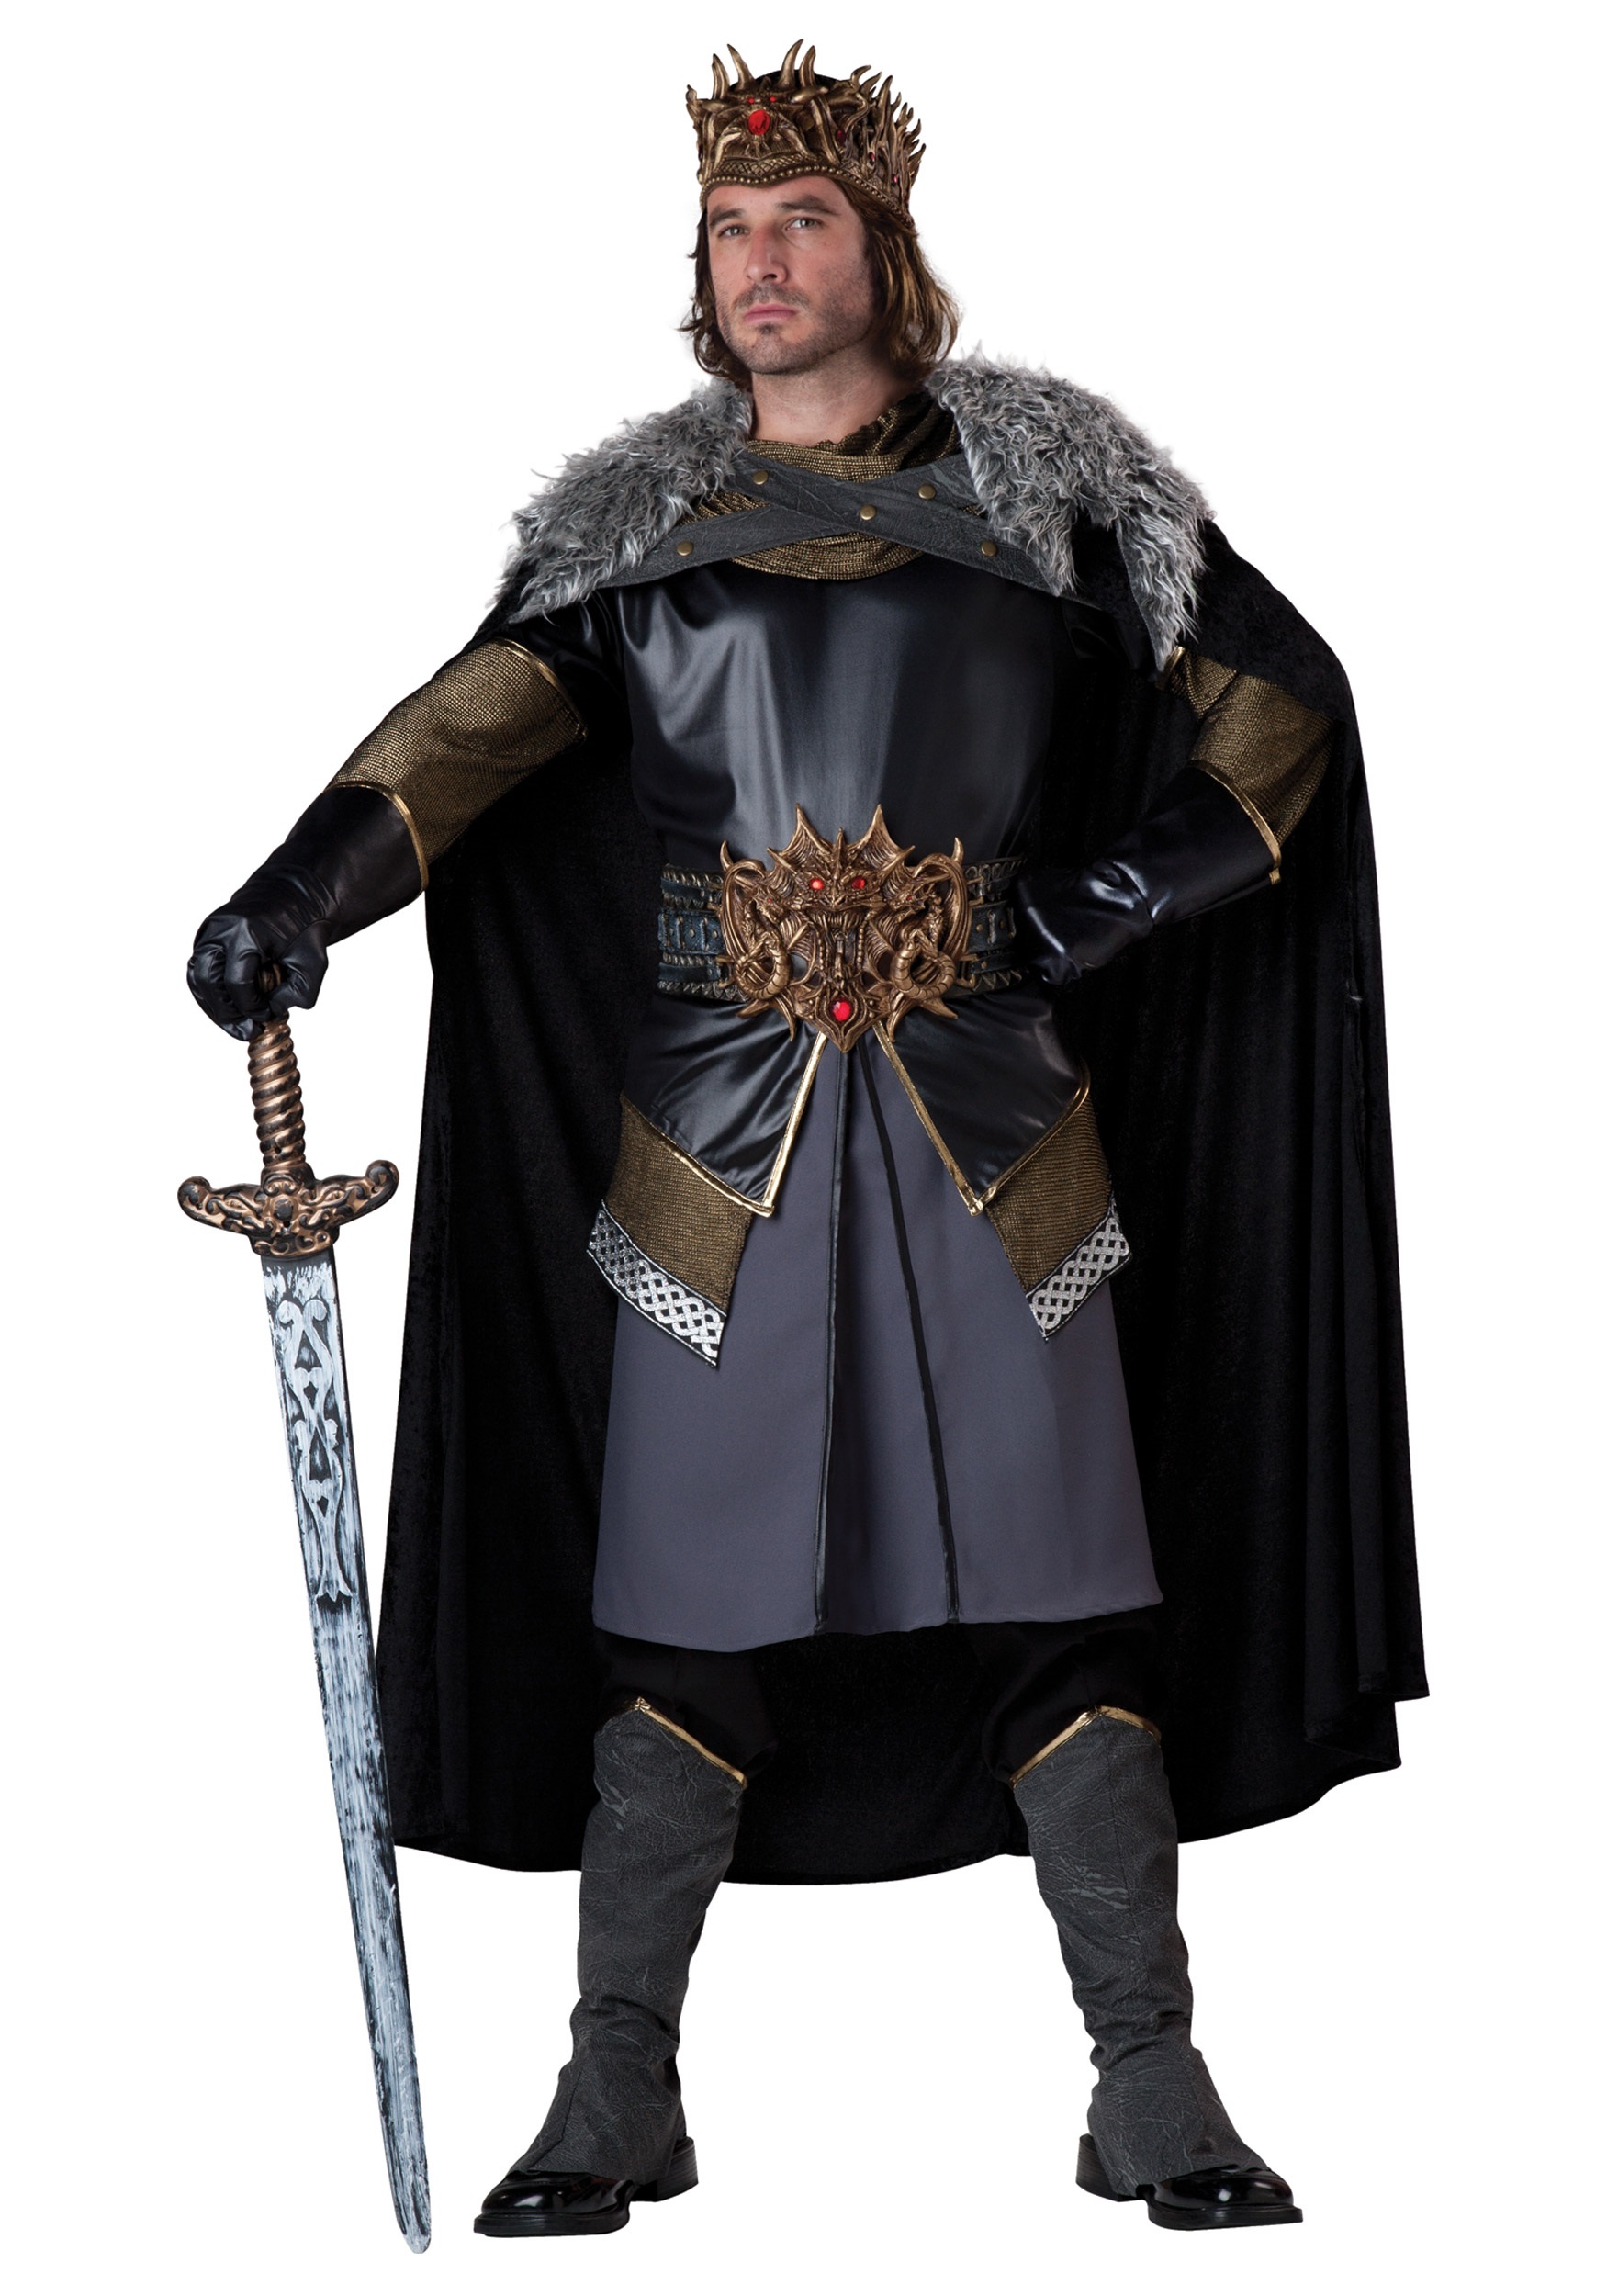 Medieval King Costume - Halloween Costume Ideas 2019